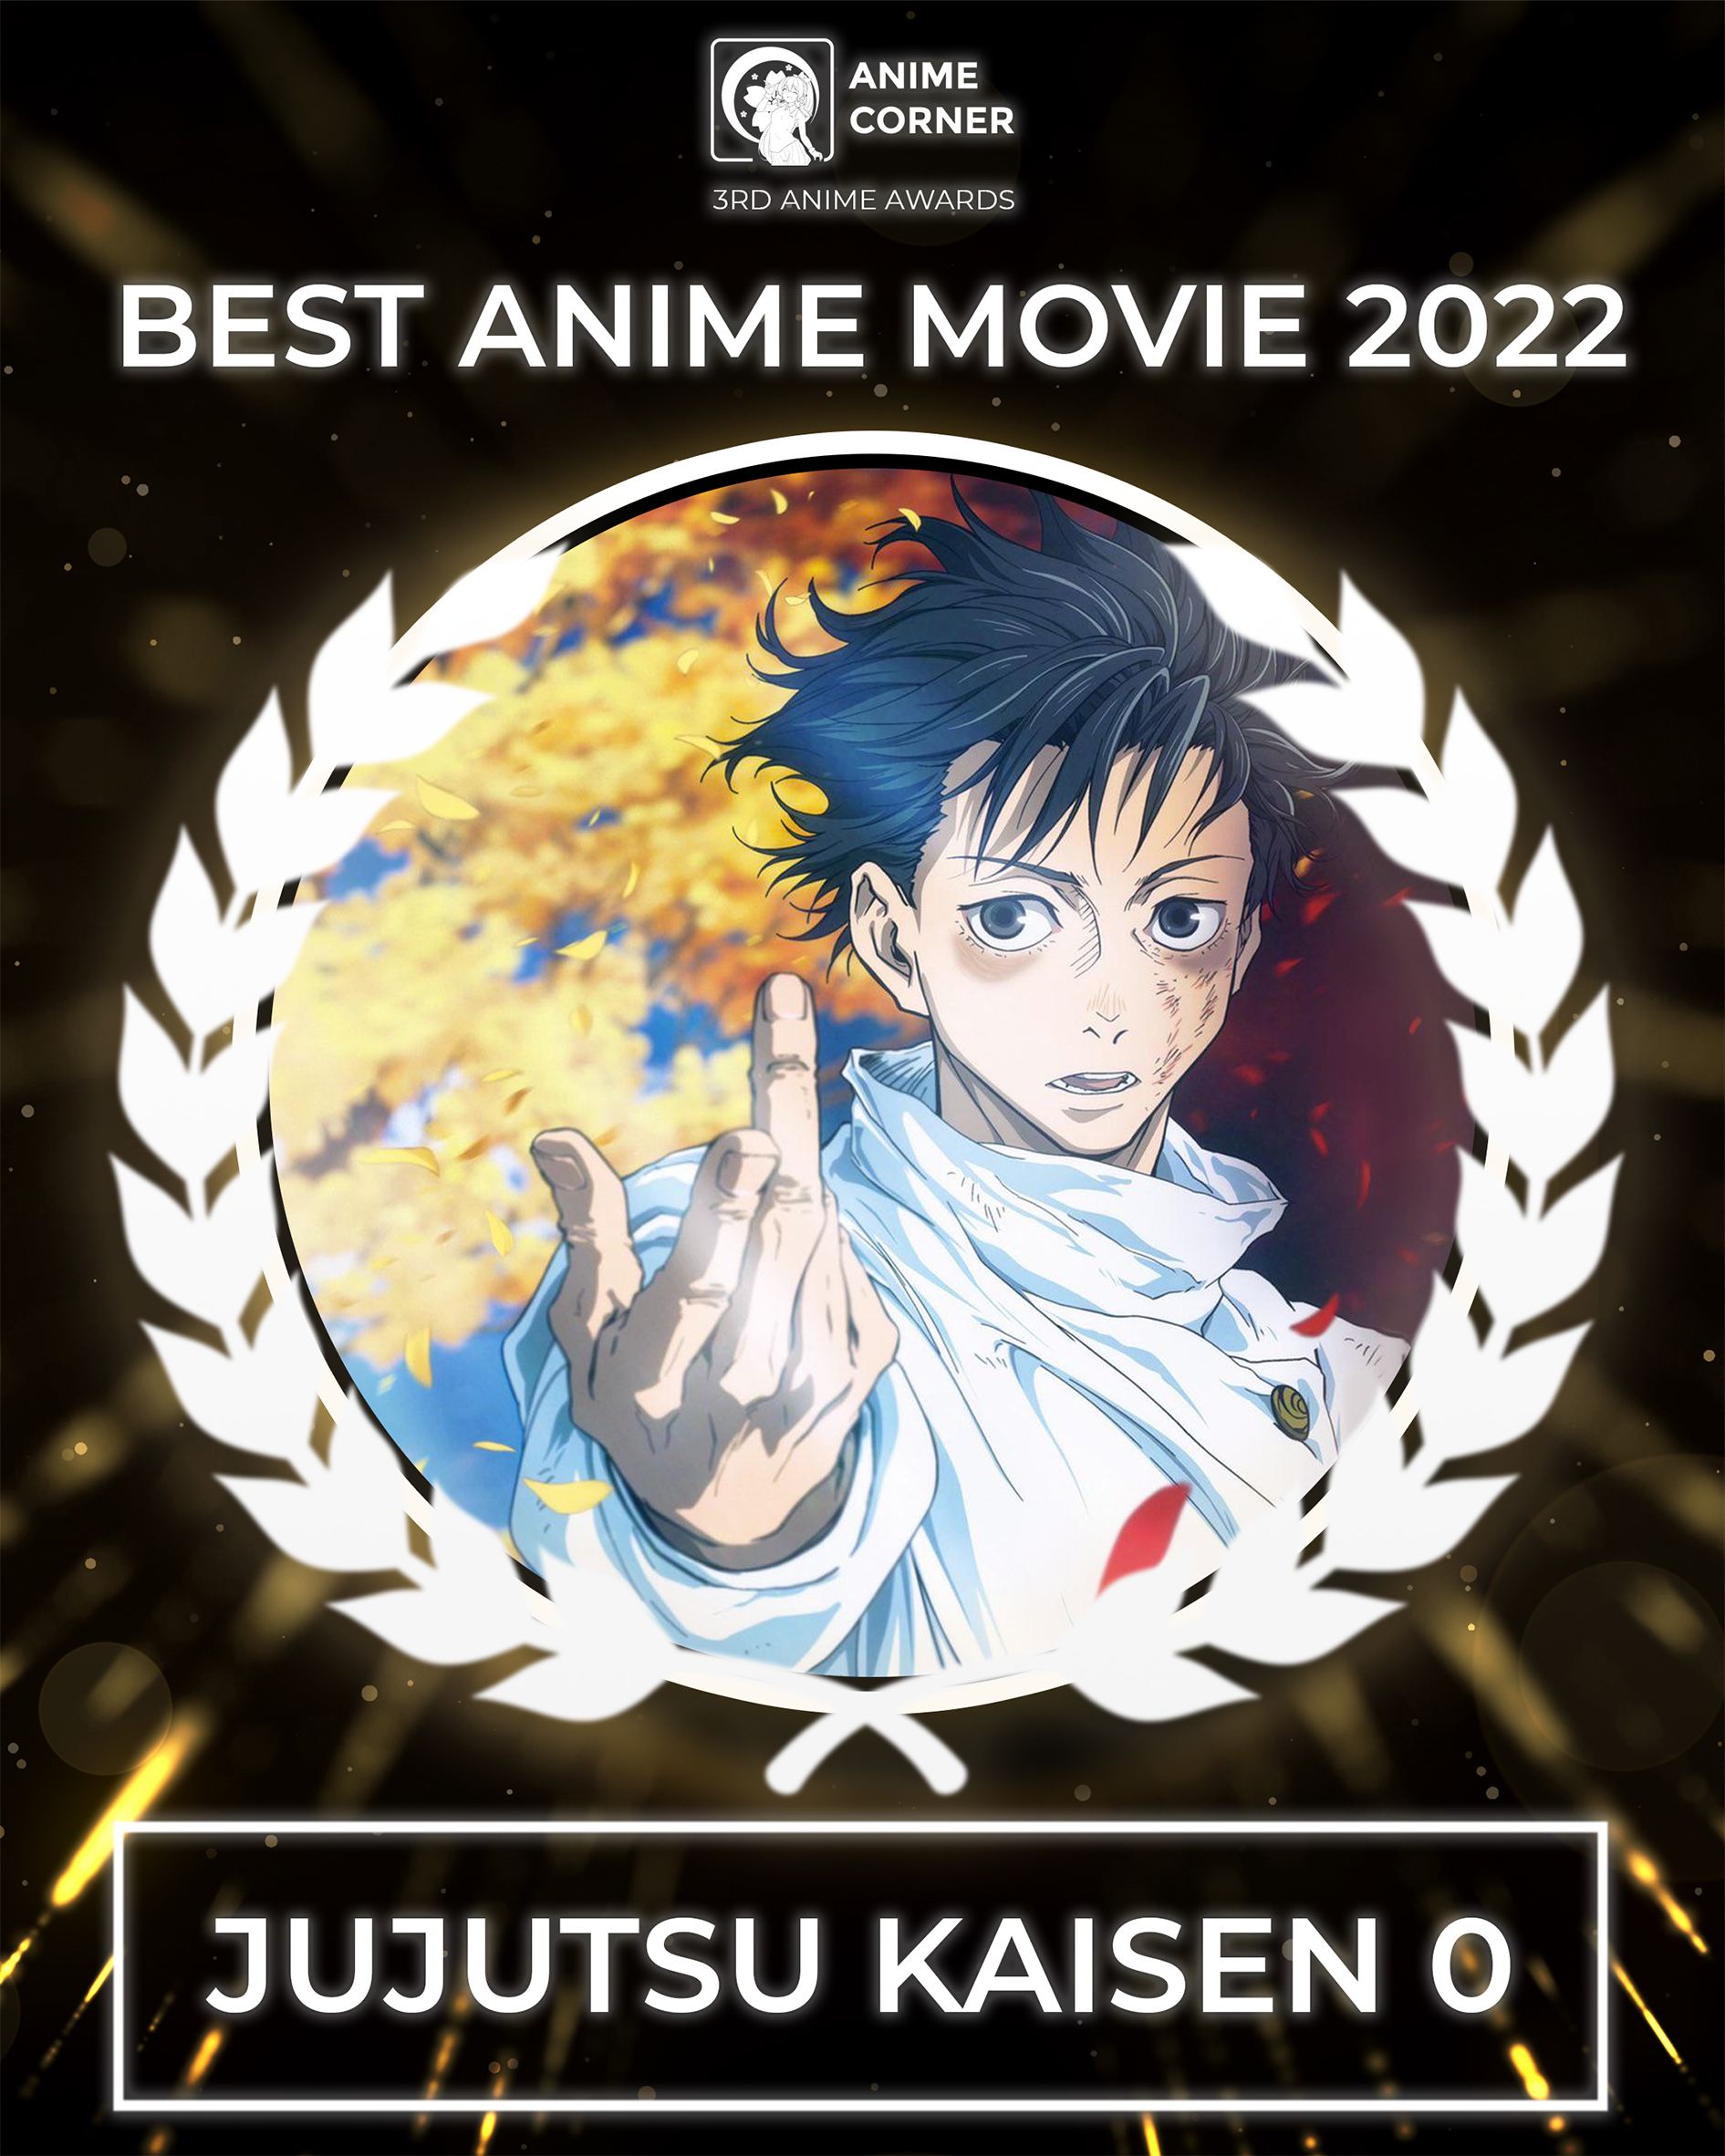 Anime Trending on X: 🏆 Fall 2022 Anime Awards 🏆 Favorite Female